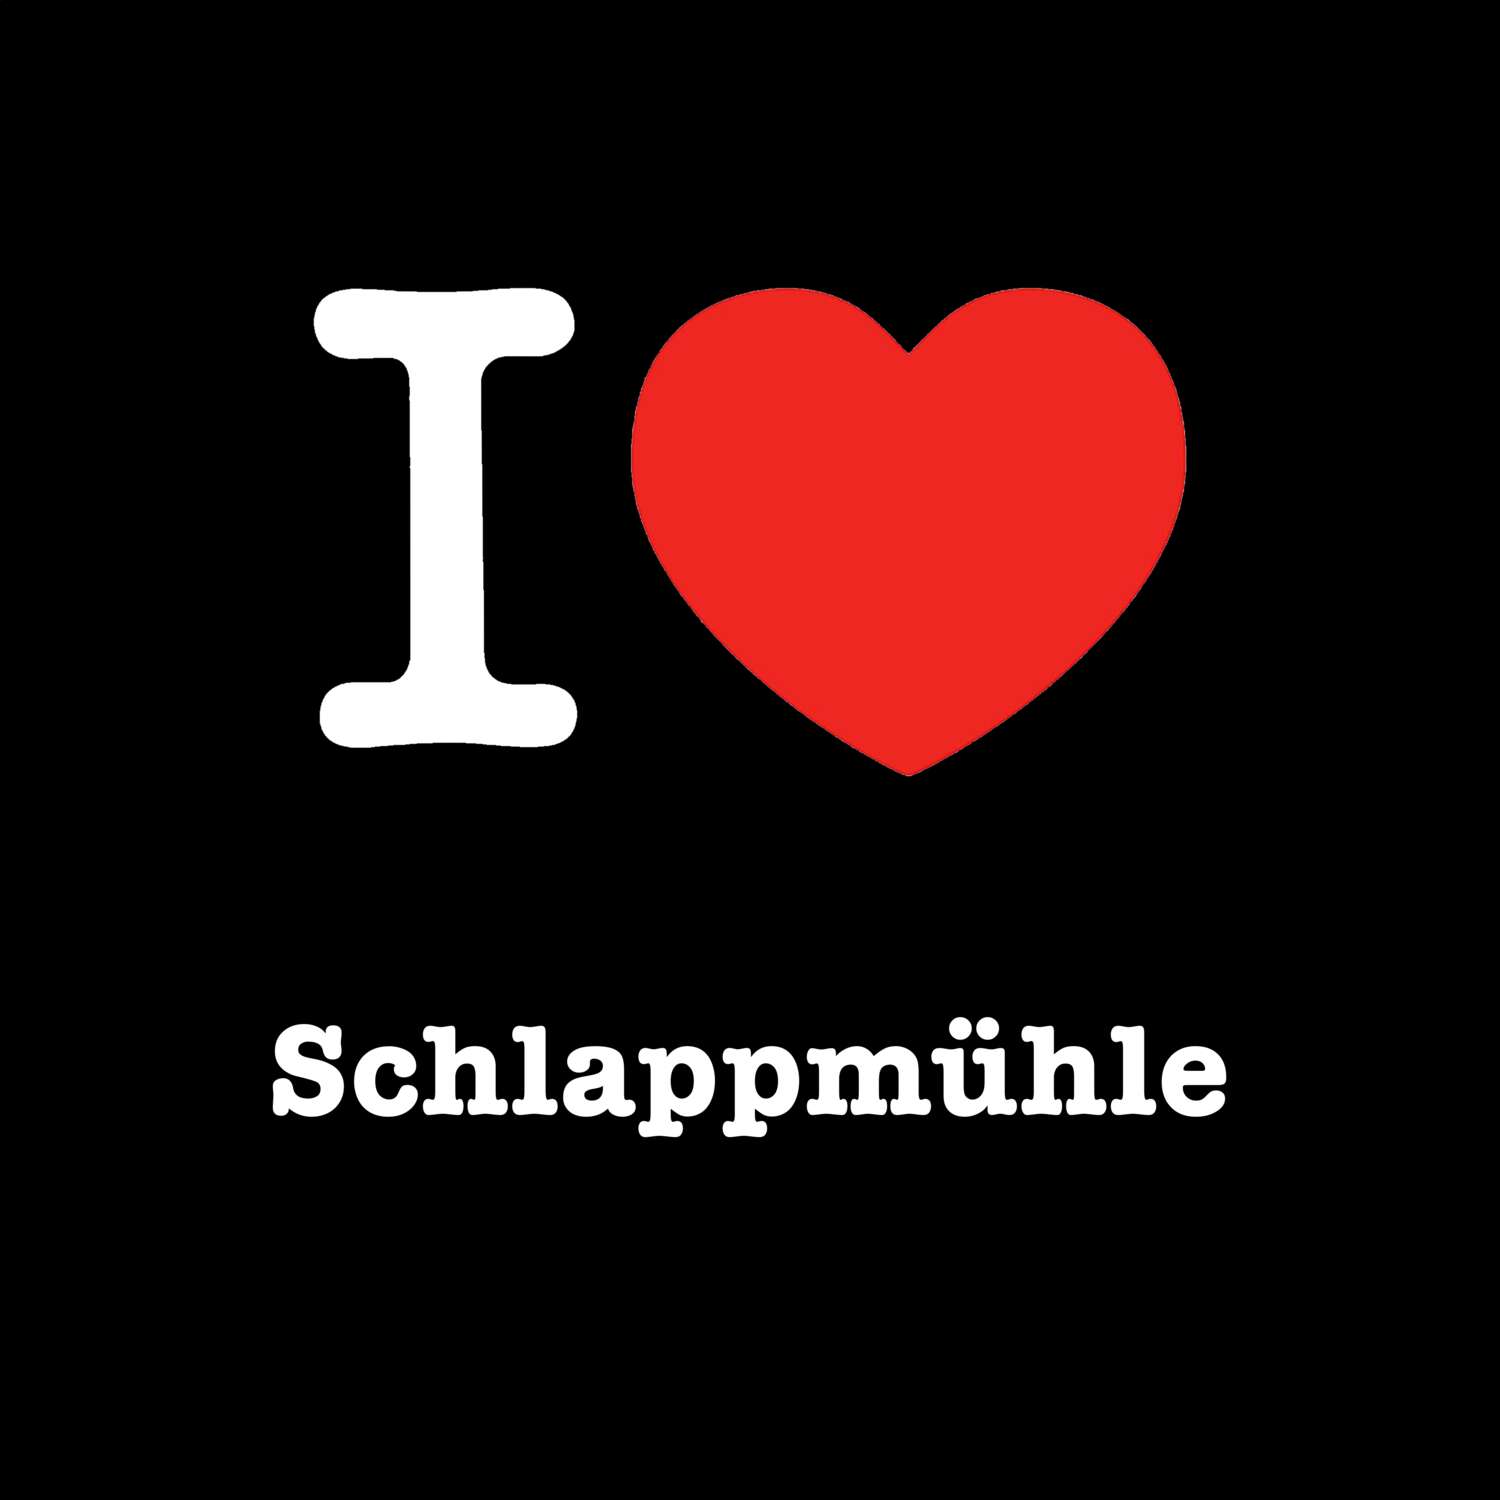 Schlappmühle T-Shirt »I love«